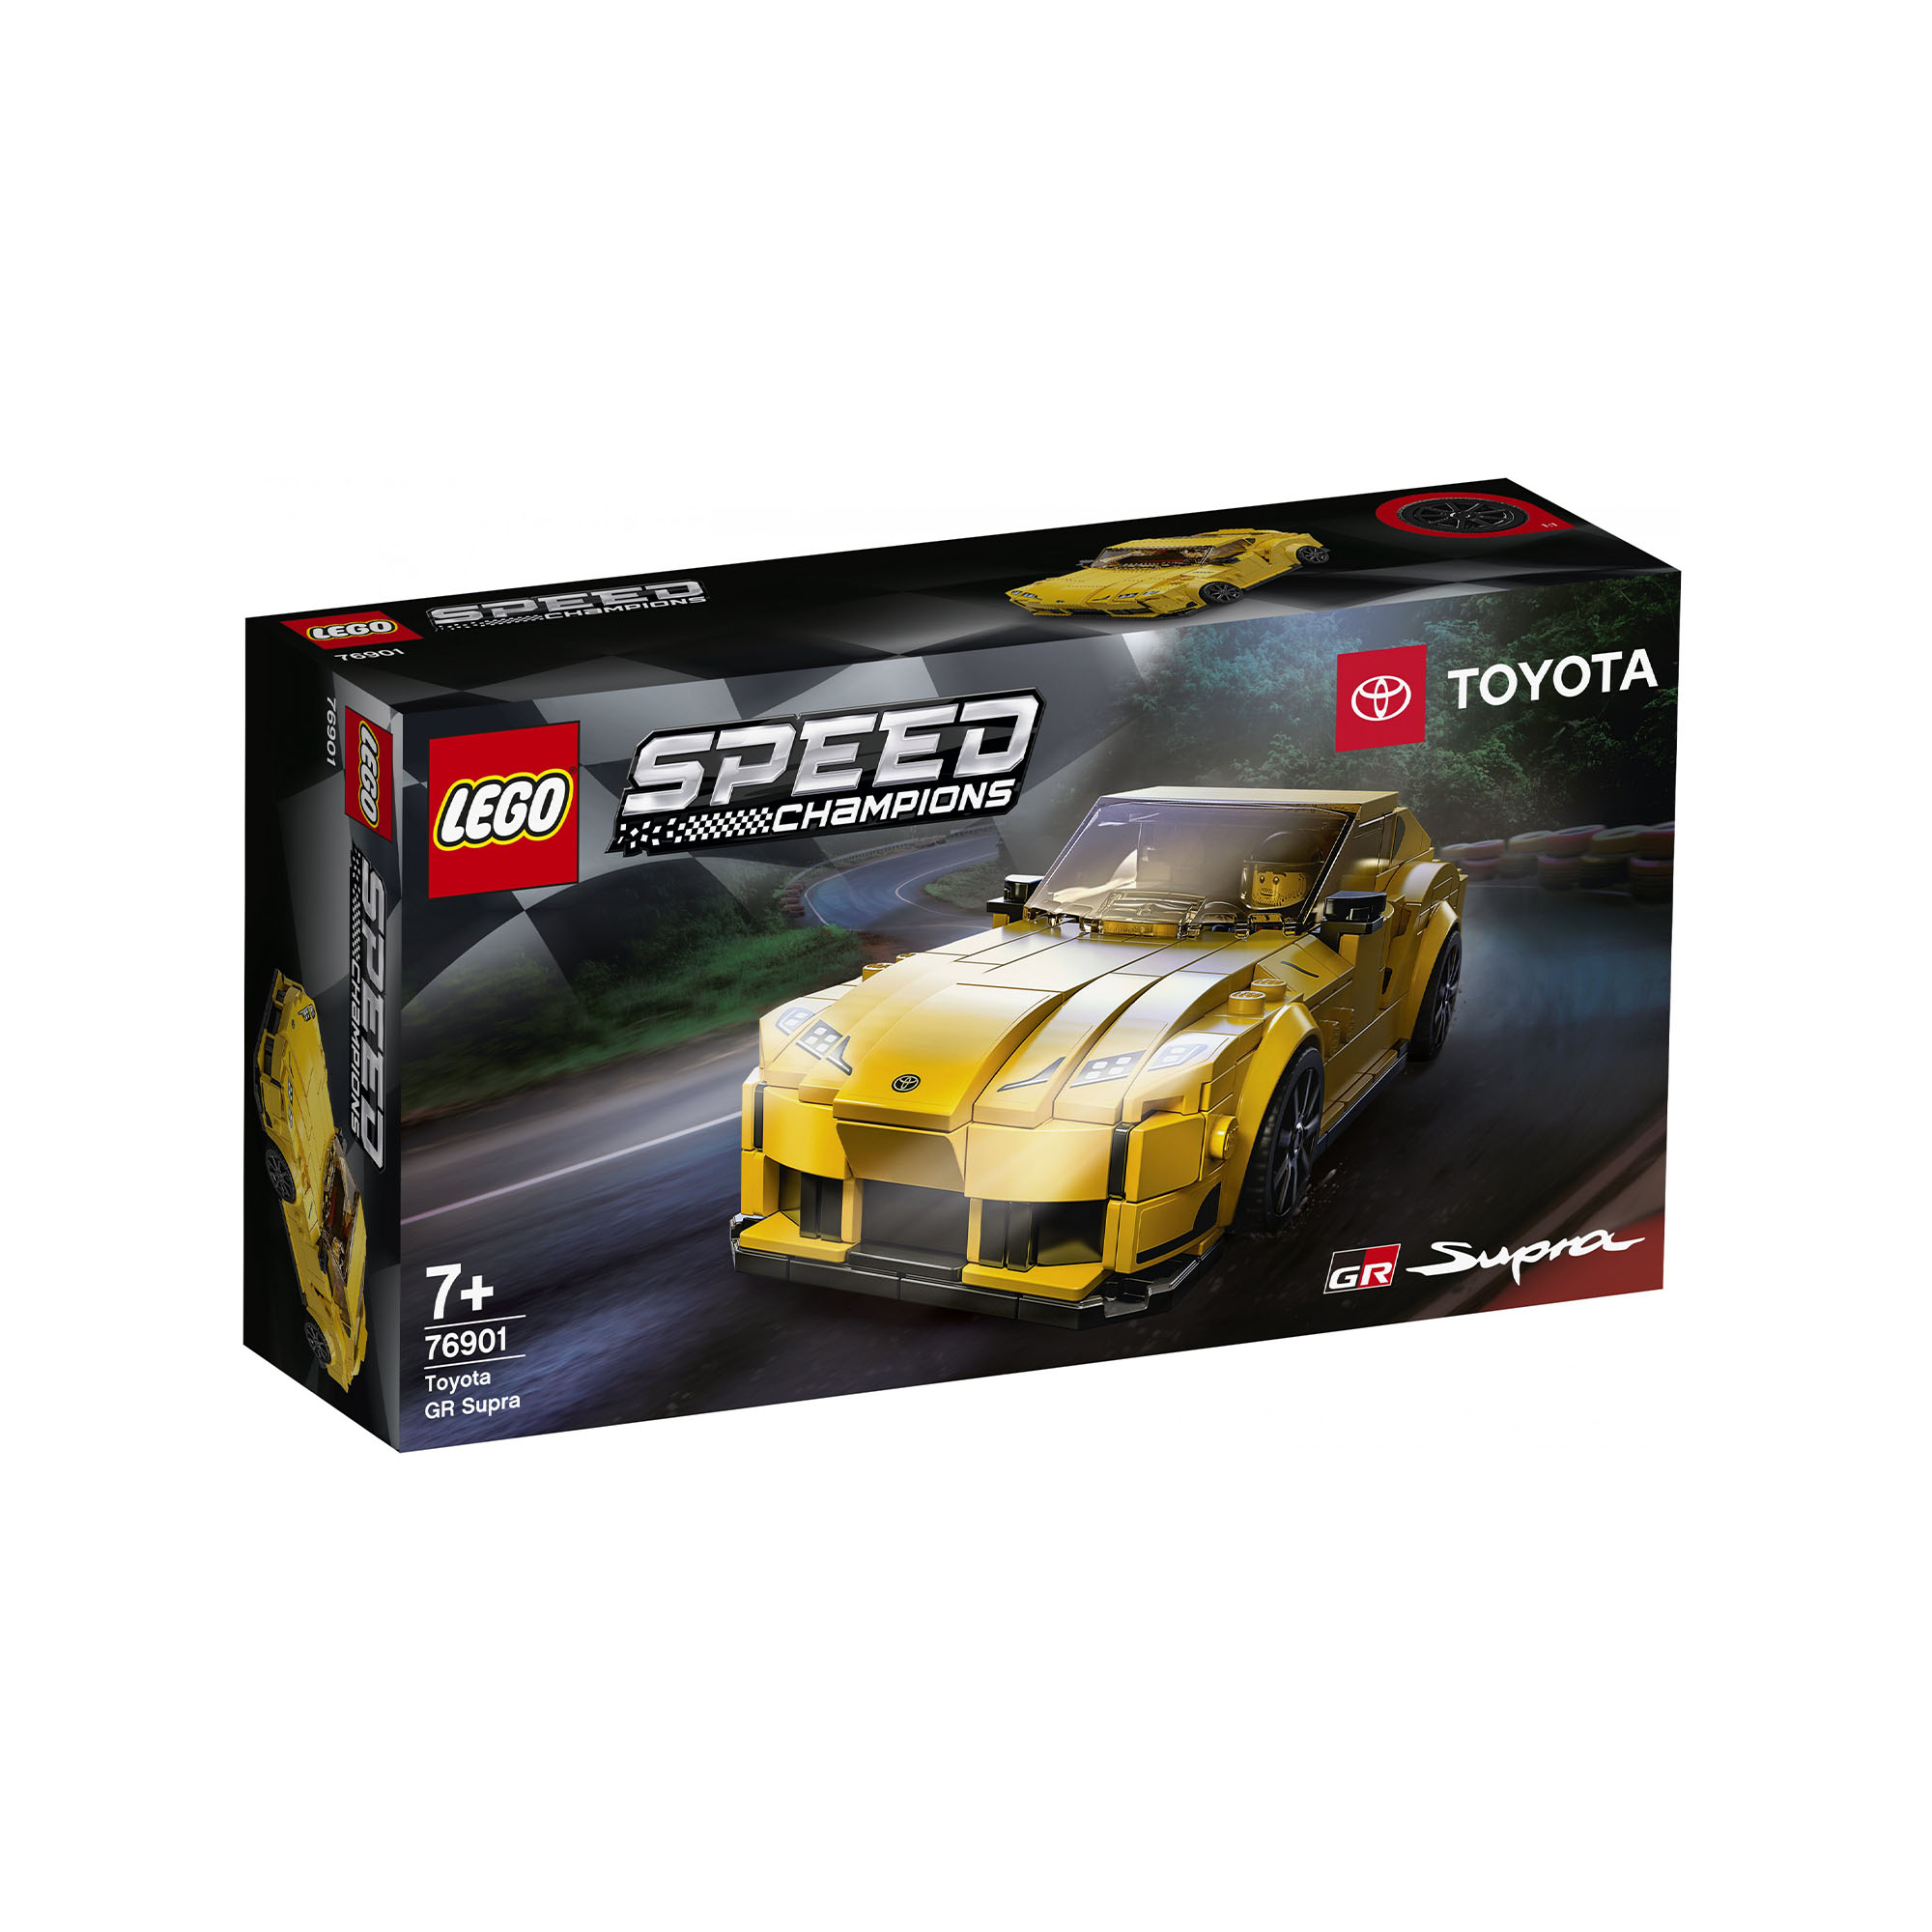 LEGO Speed Champions Toyota GR Supra, Macchina Giocattolo per Bambini di 7 Anni, 76901, , large